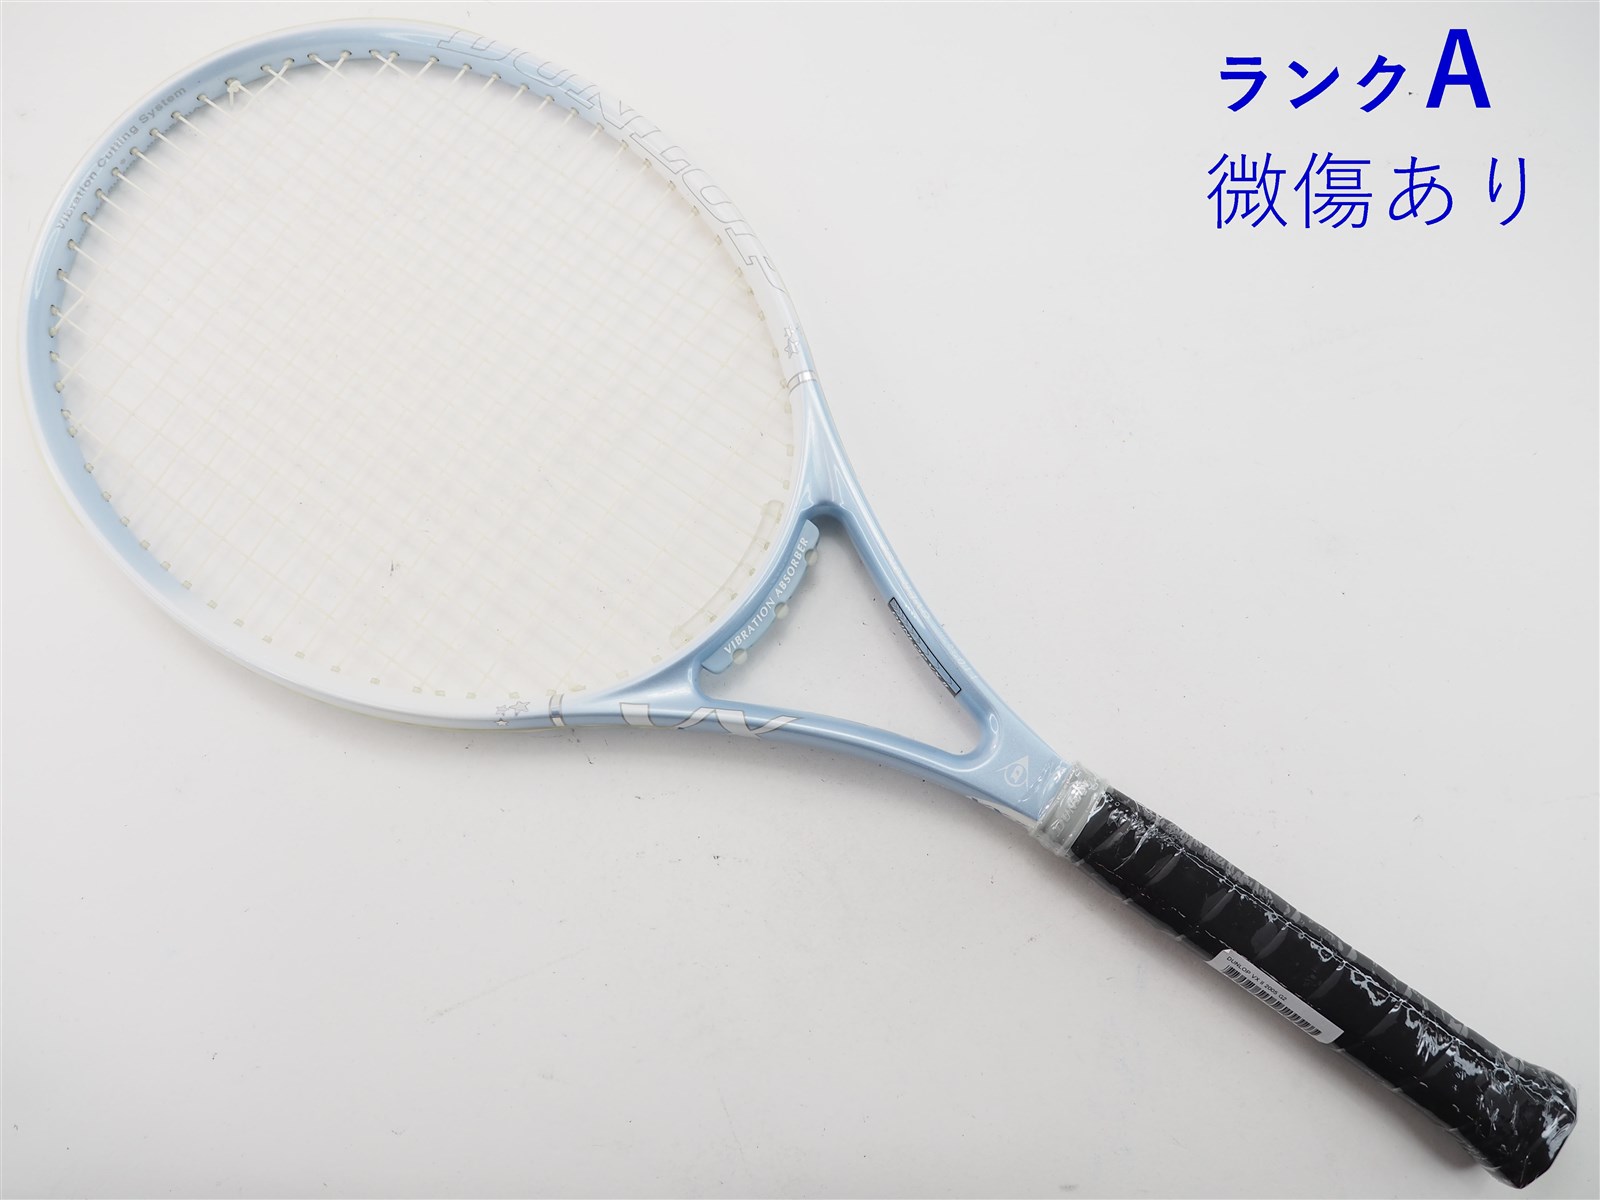 テニスラケット ダンロップ ダンロップ ブイエックス 2 2005年モデル (G2)DUNLOP DUNLOP VX ll 2005